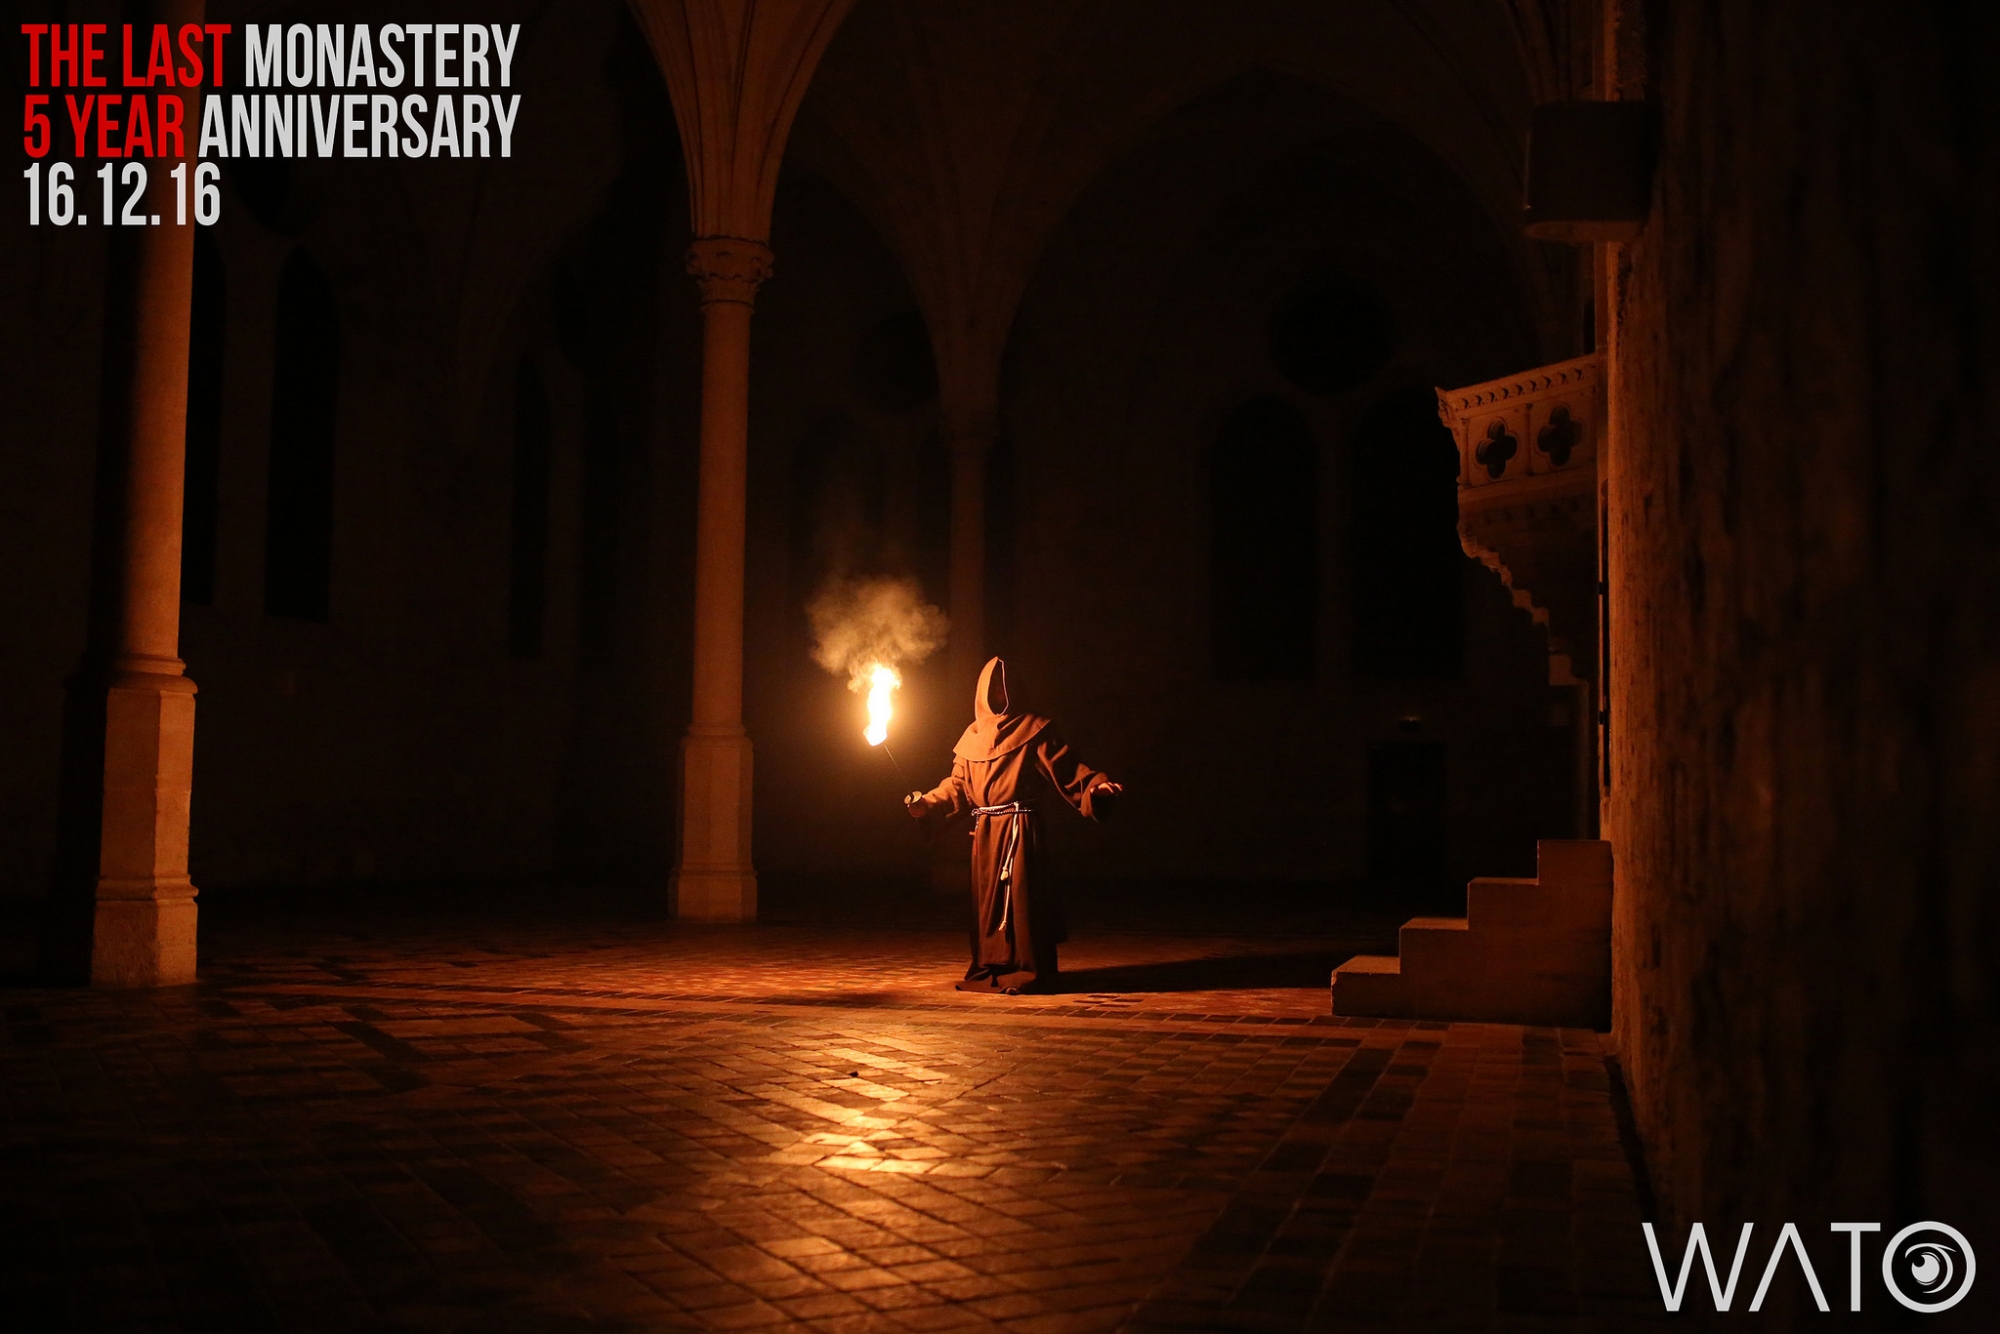 The Last Monastery, vendredi 16 décembre 2016, de 19h à 1h dans un lieu secret - Photo 3